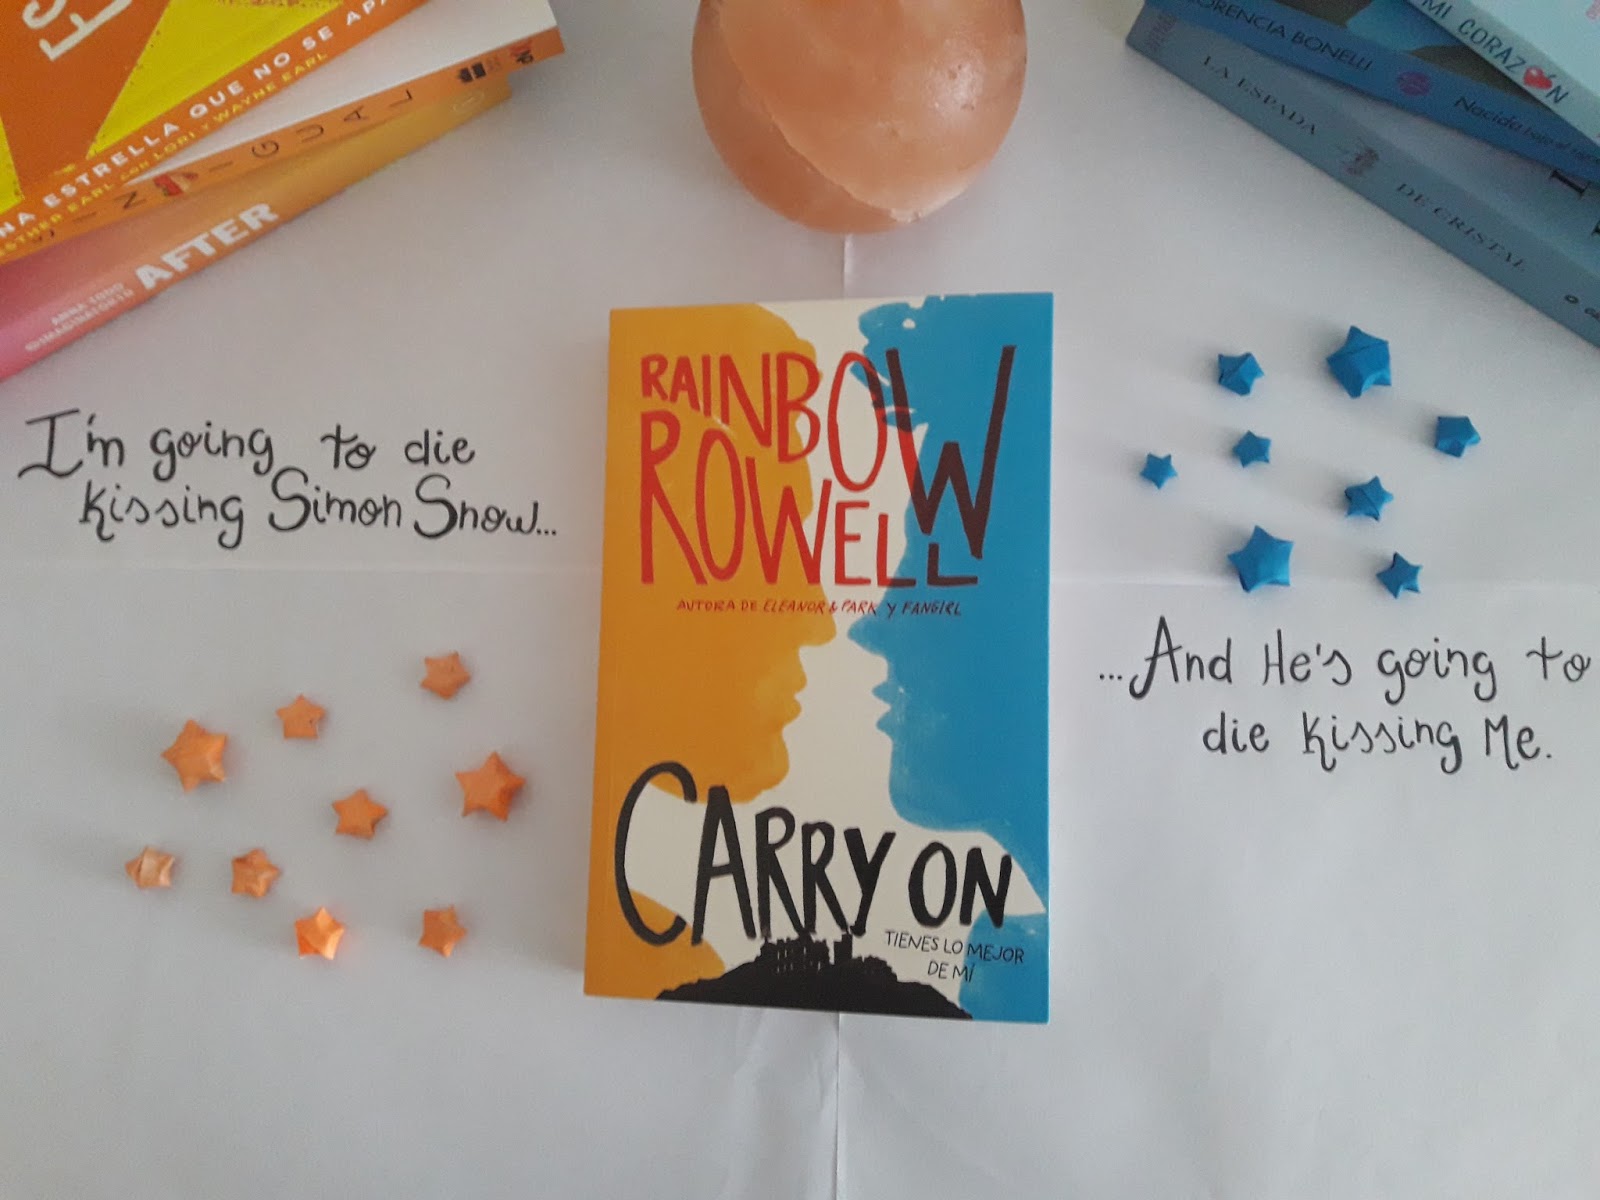 carry on rainbow rowell summary